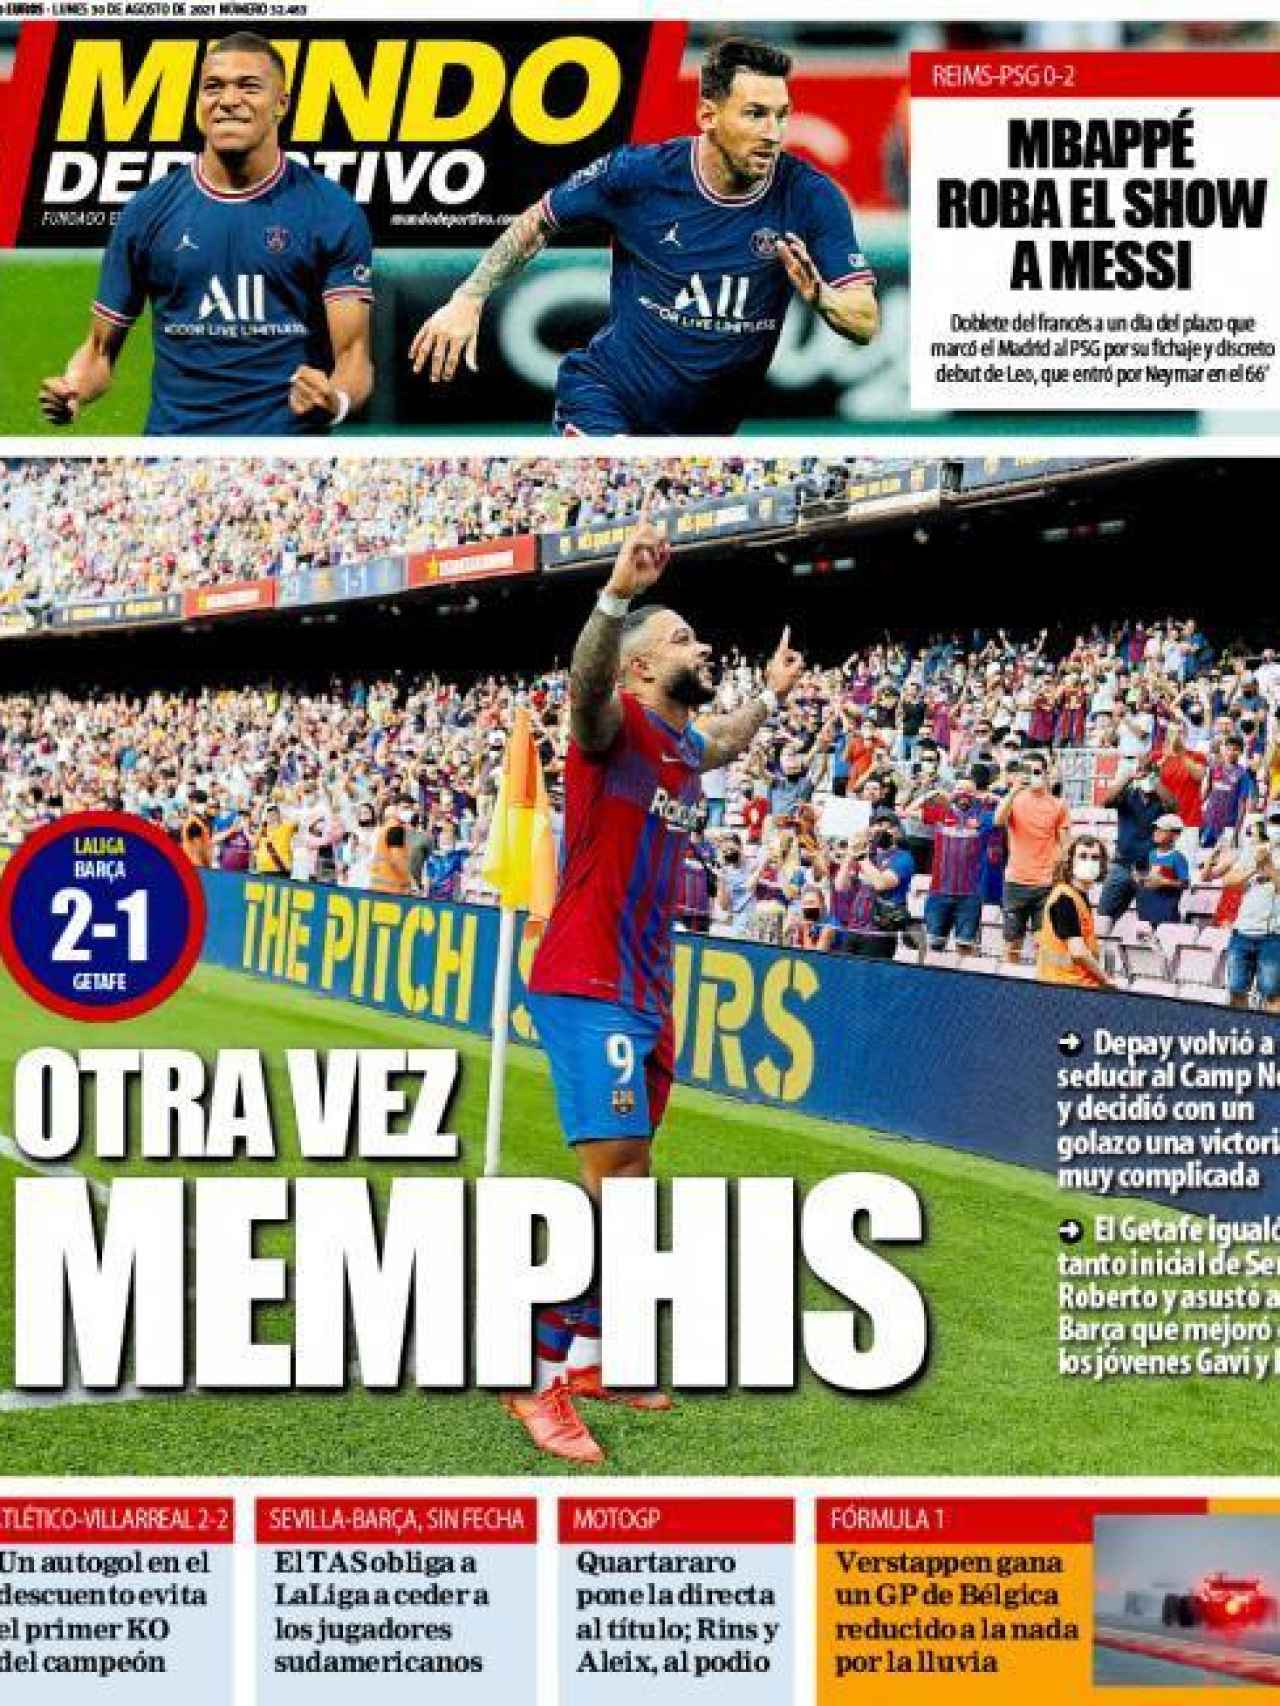 La portada del diario Mundo Deportivo (30/08/2021)